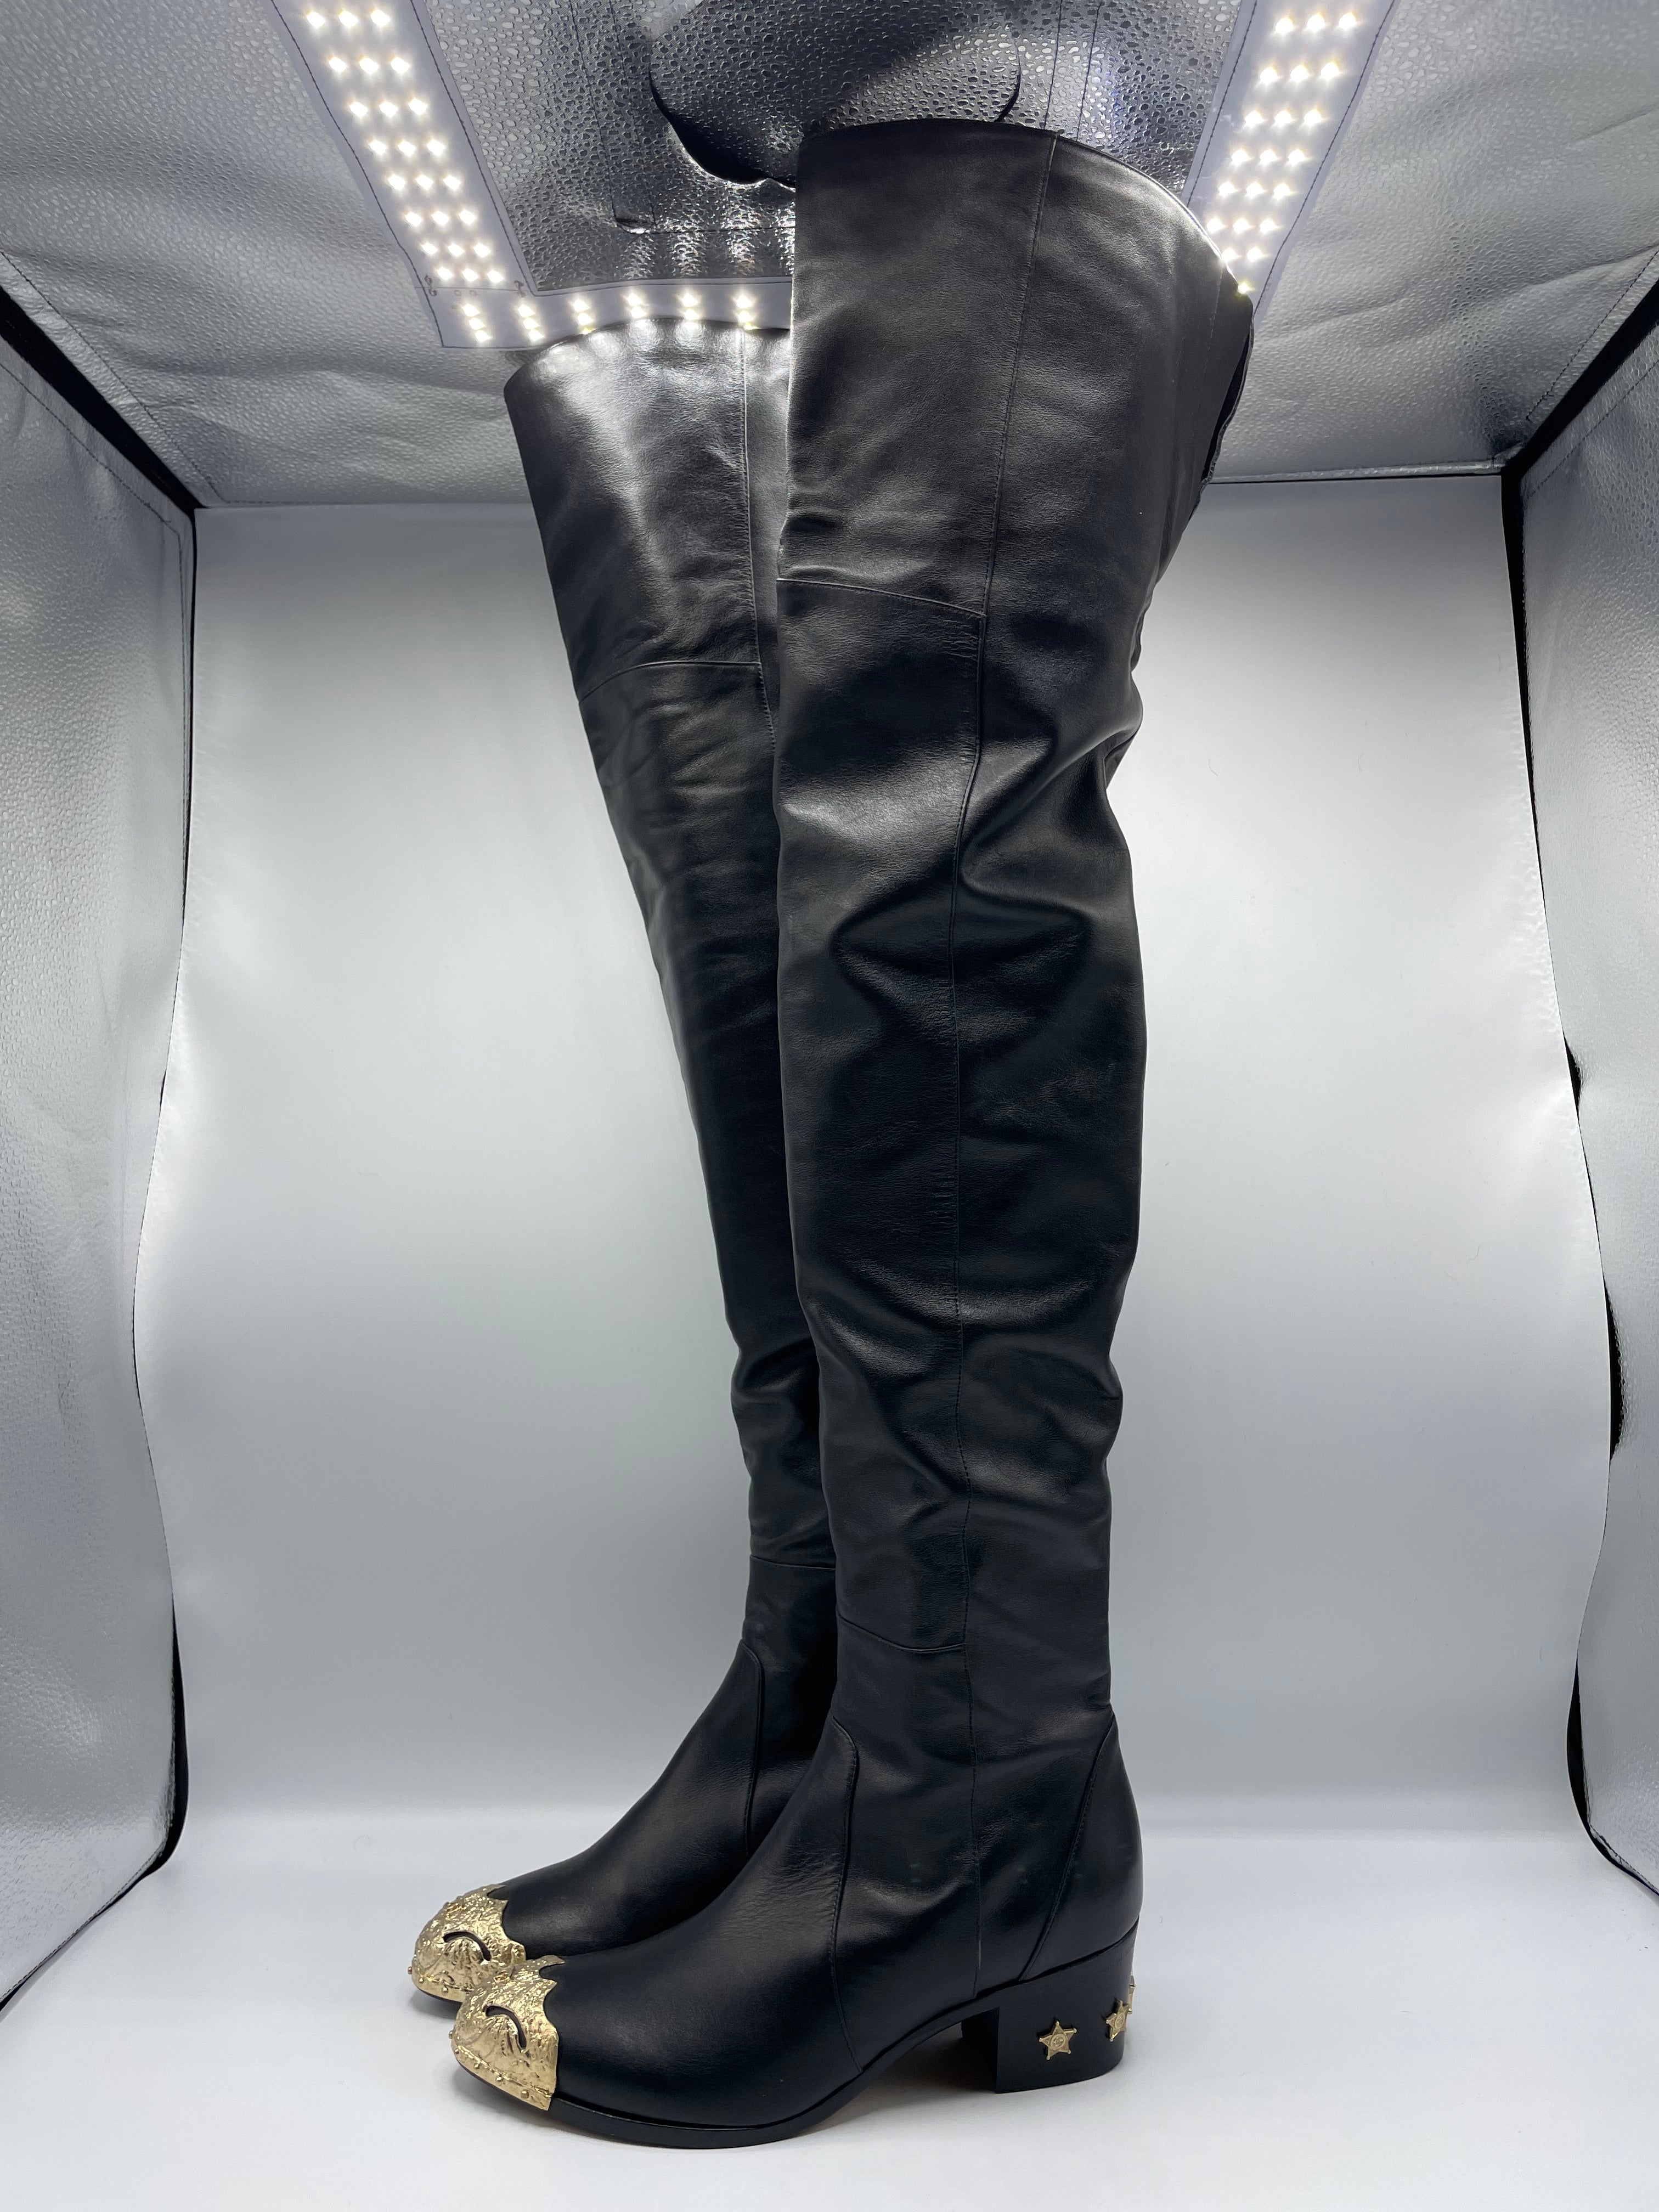 Cuissardes Chanel Taille 40. Ces bottes Chanel en cuir noir avec des ferrures dorées sont intemporelles et en excellent état. La semelle n'a jamais été utilisée auparavant et est dans un état fantastique.Collection Paris-Dallas (2013-2014) .